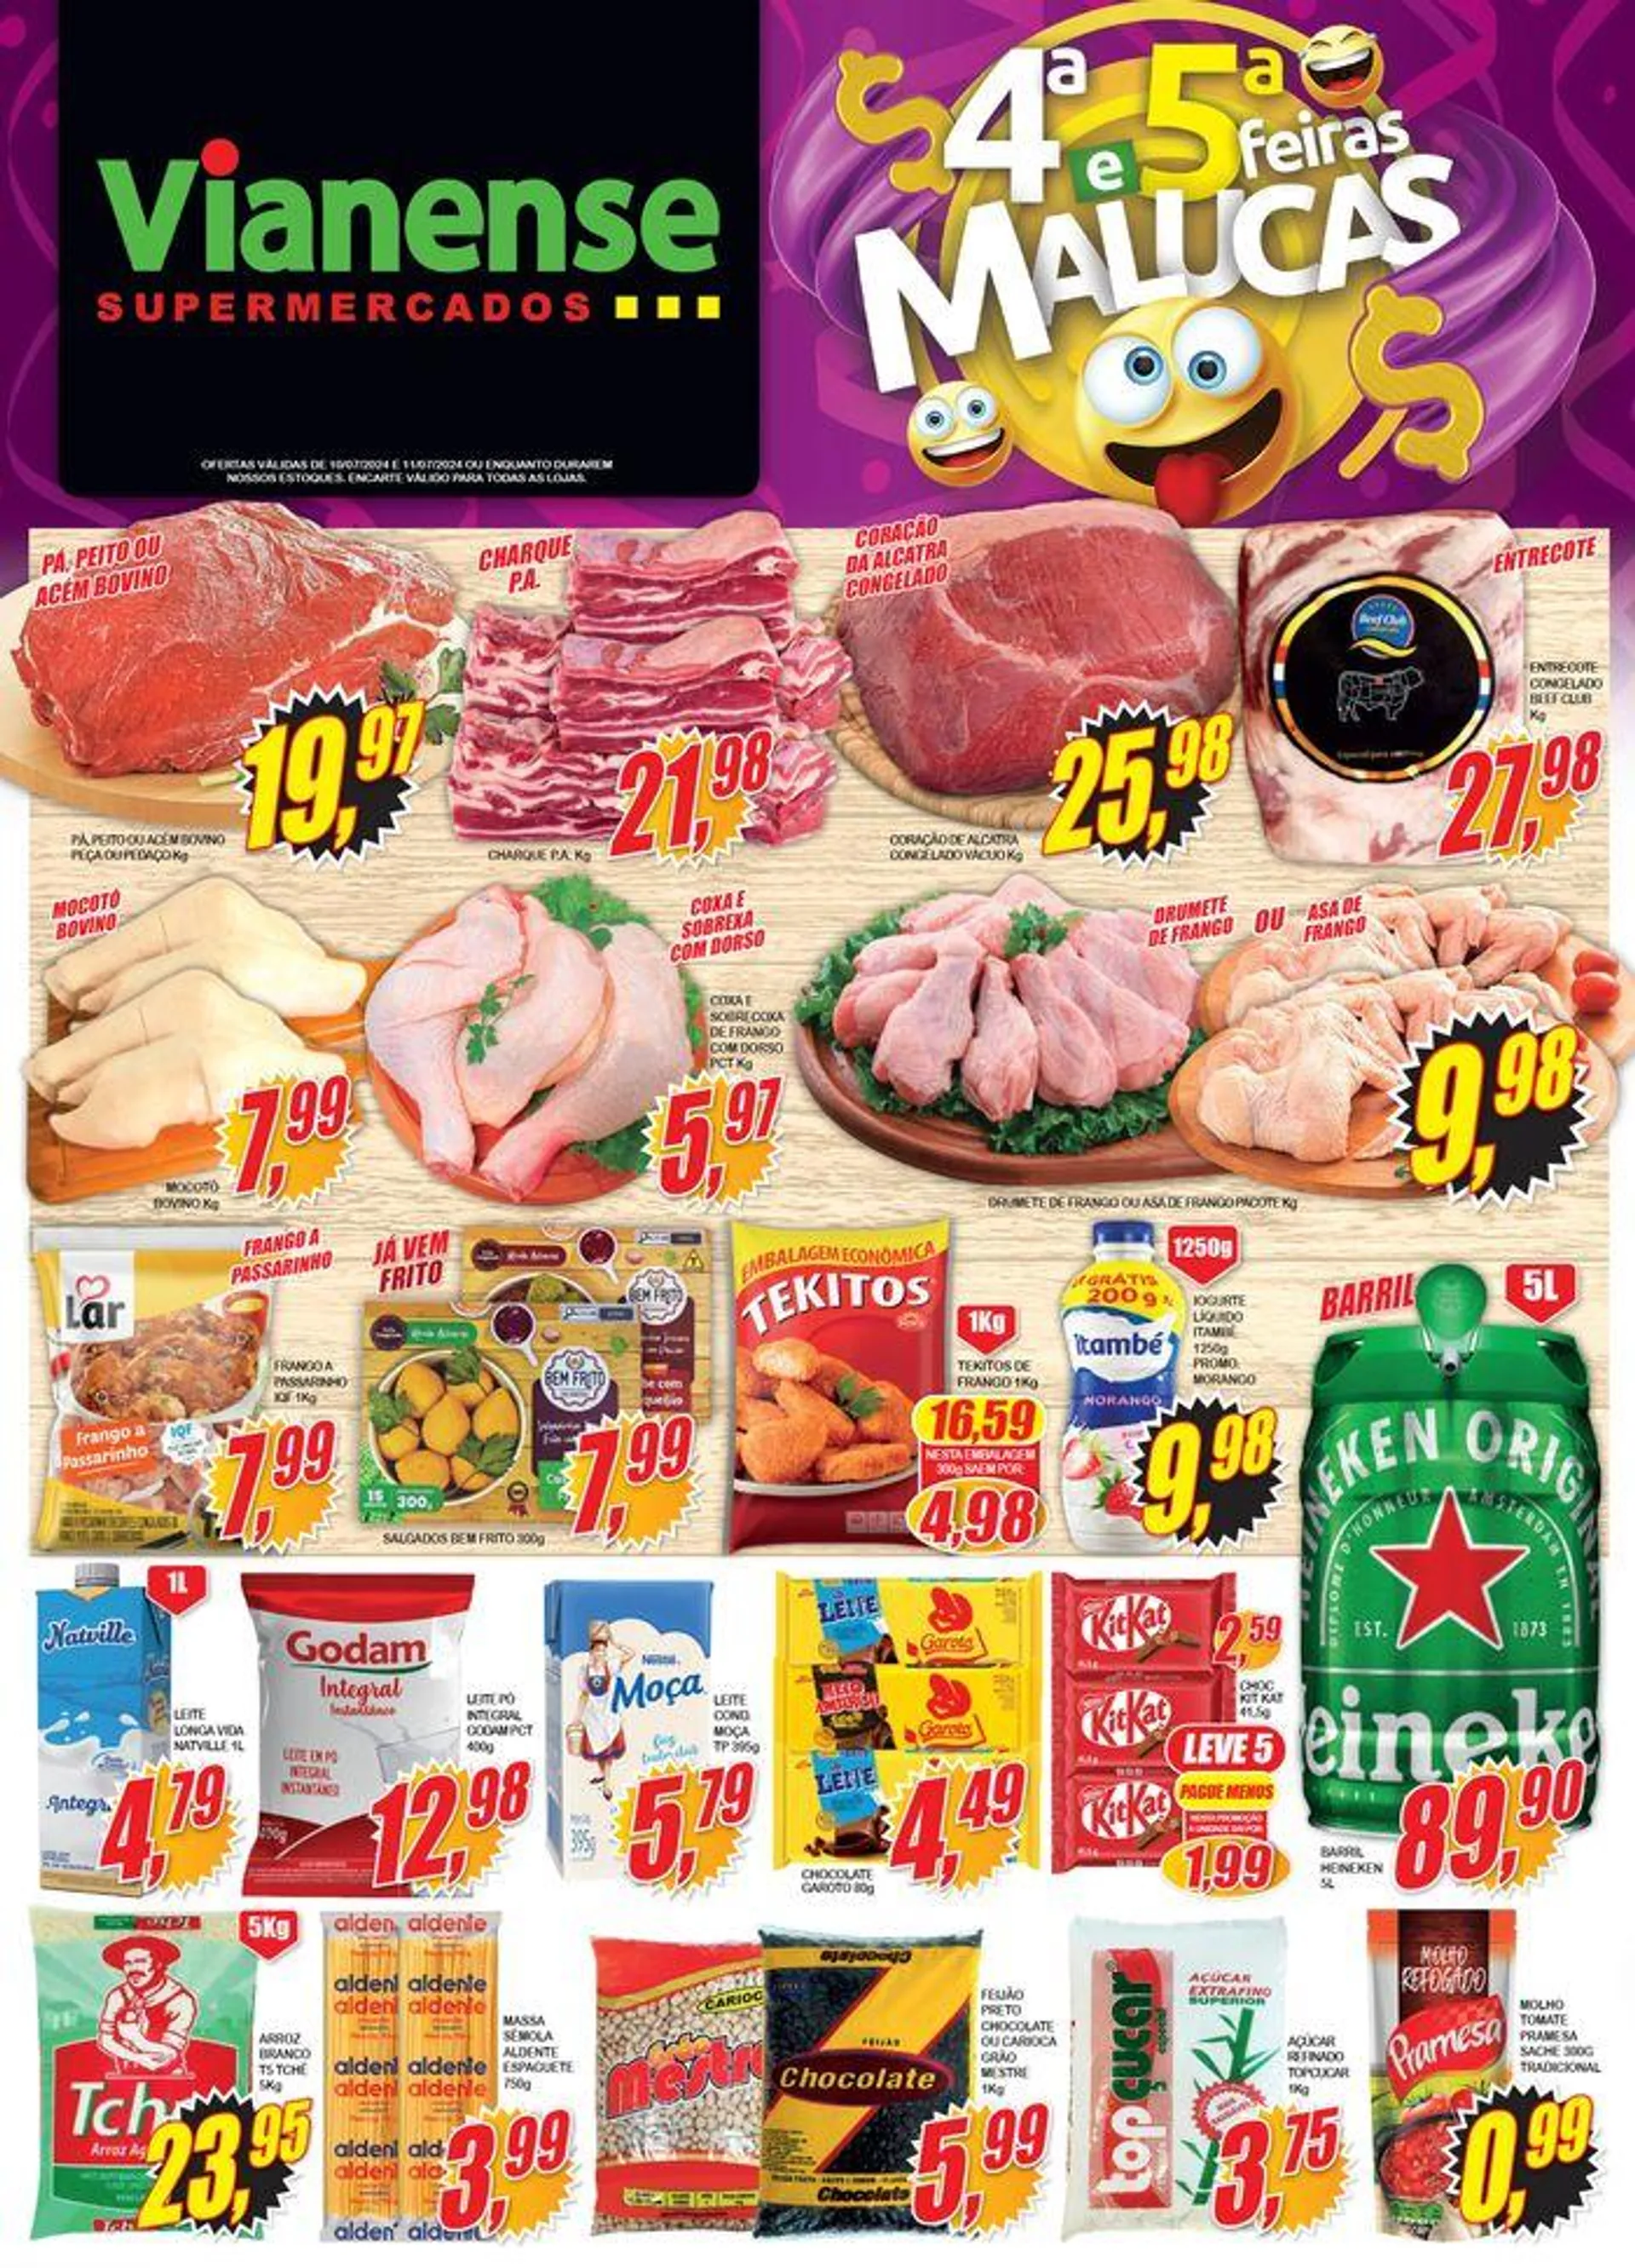 Ofertas Vianense Supermercados - 1